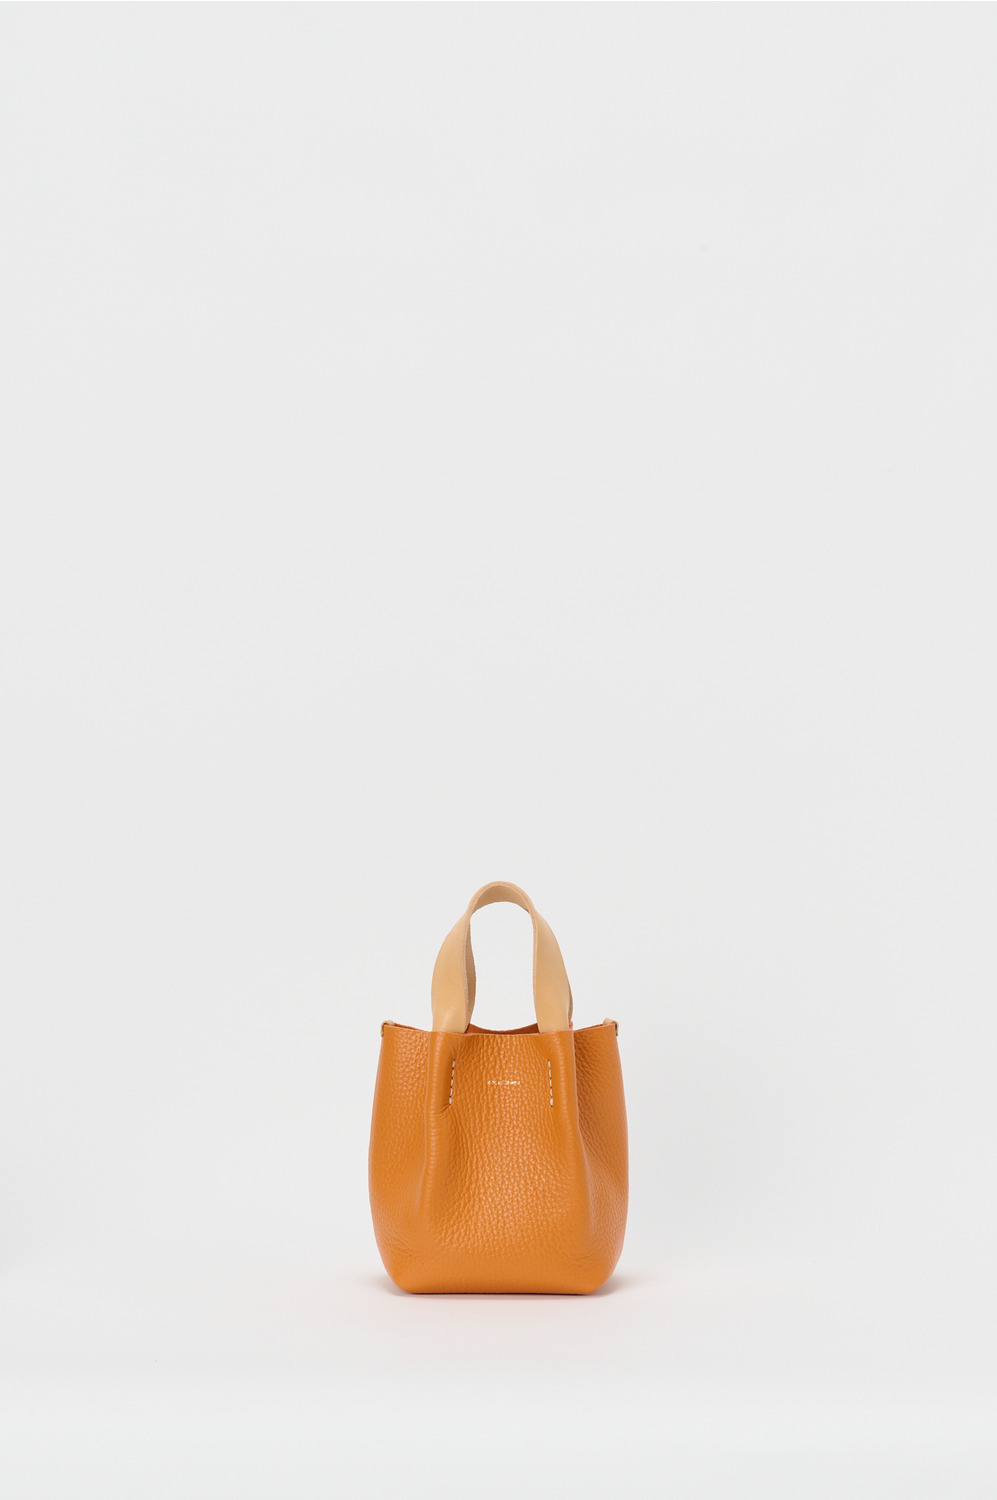 piano bag small 詳細画像 orange 1